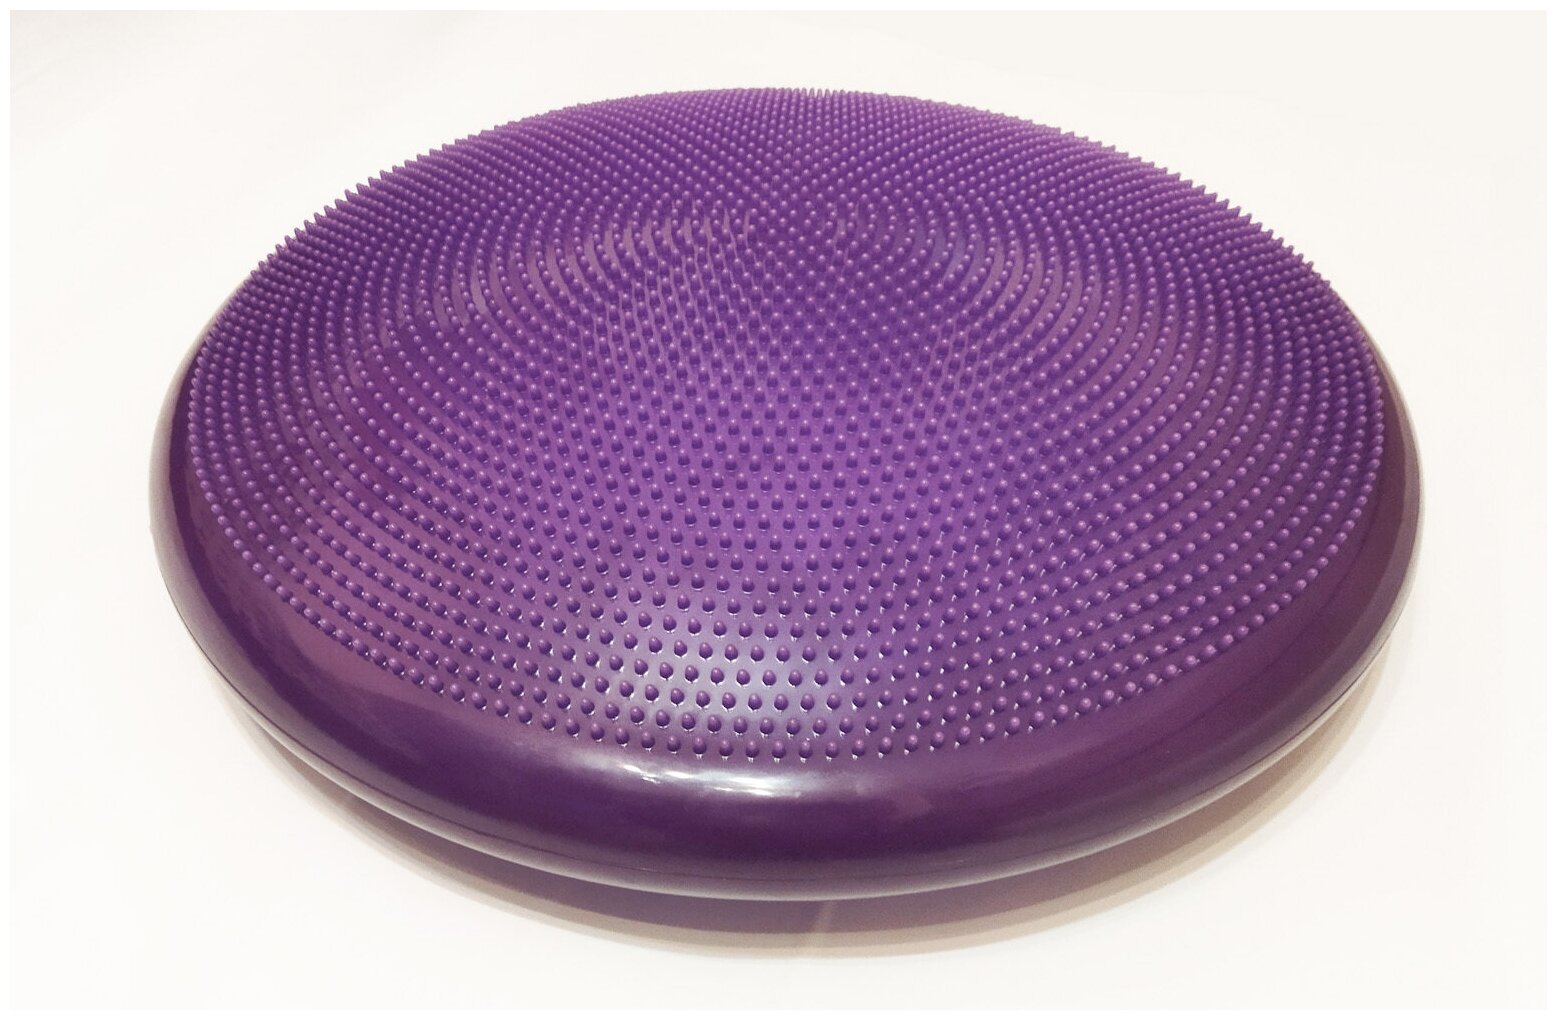 Диск спортивный массажный GCsport Breath, диаметр 55см, фиолетовый (балансировочная подушка + тренажер для дыхания)